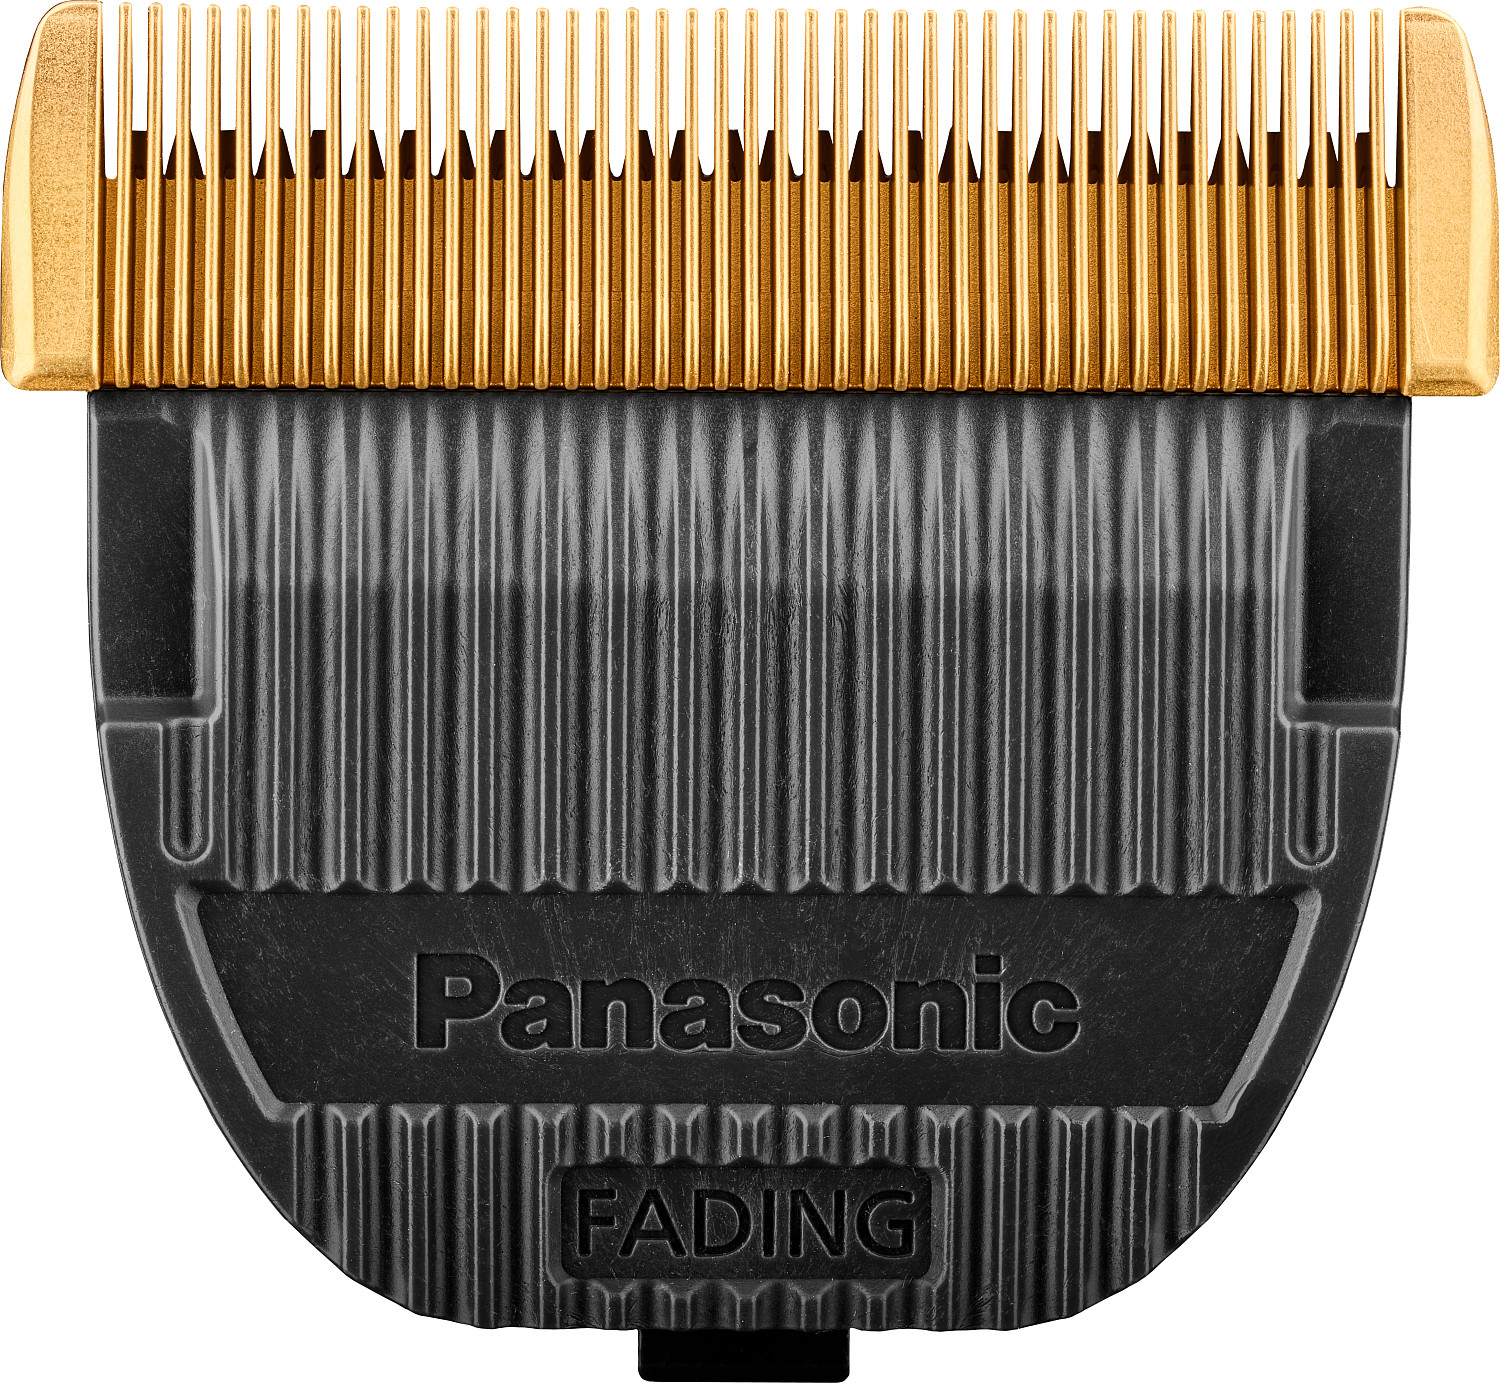  Panasonic Tête de coupe Fading Blade WER9930Y pour ER-DGP86 